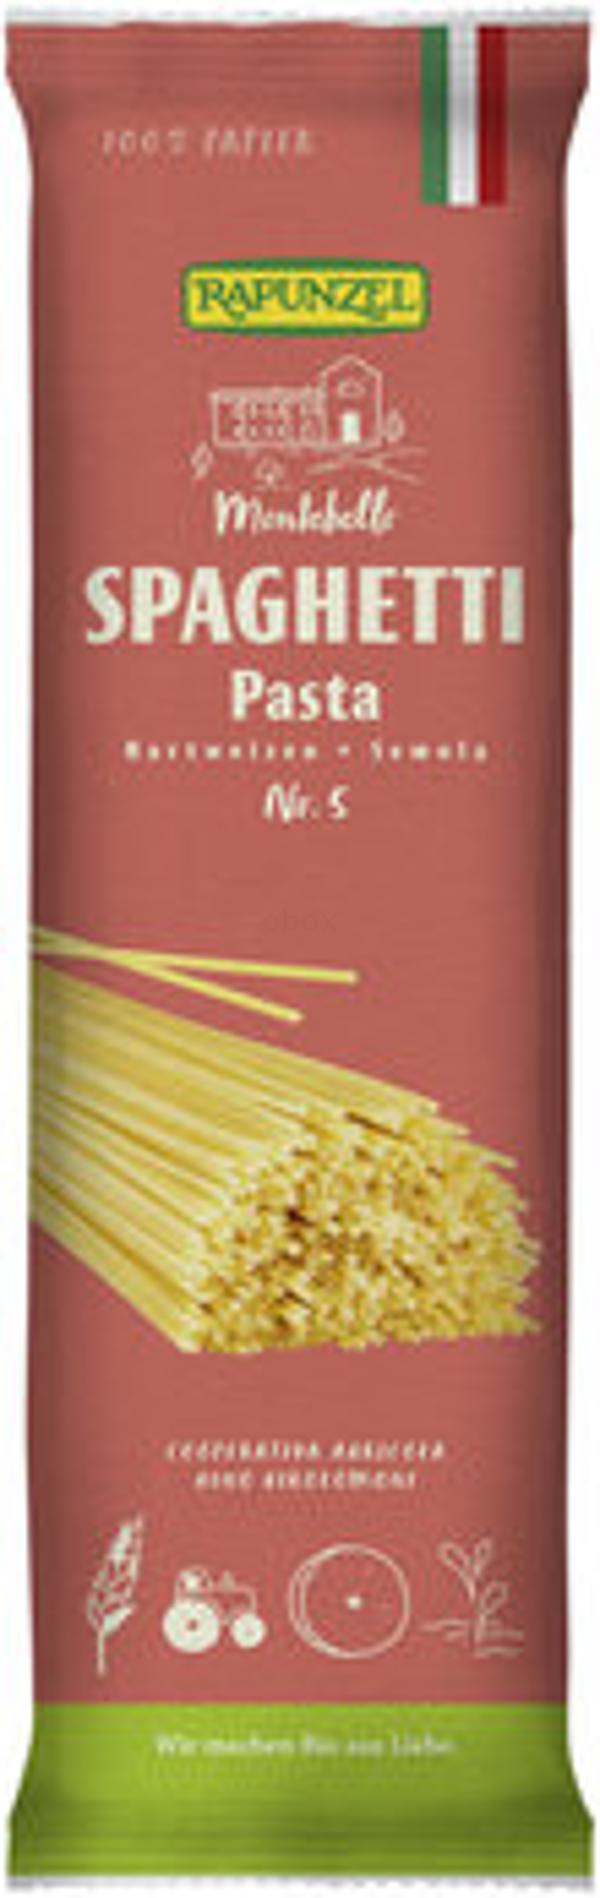 Produktfoto zu Spaghetti Semola no.5